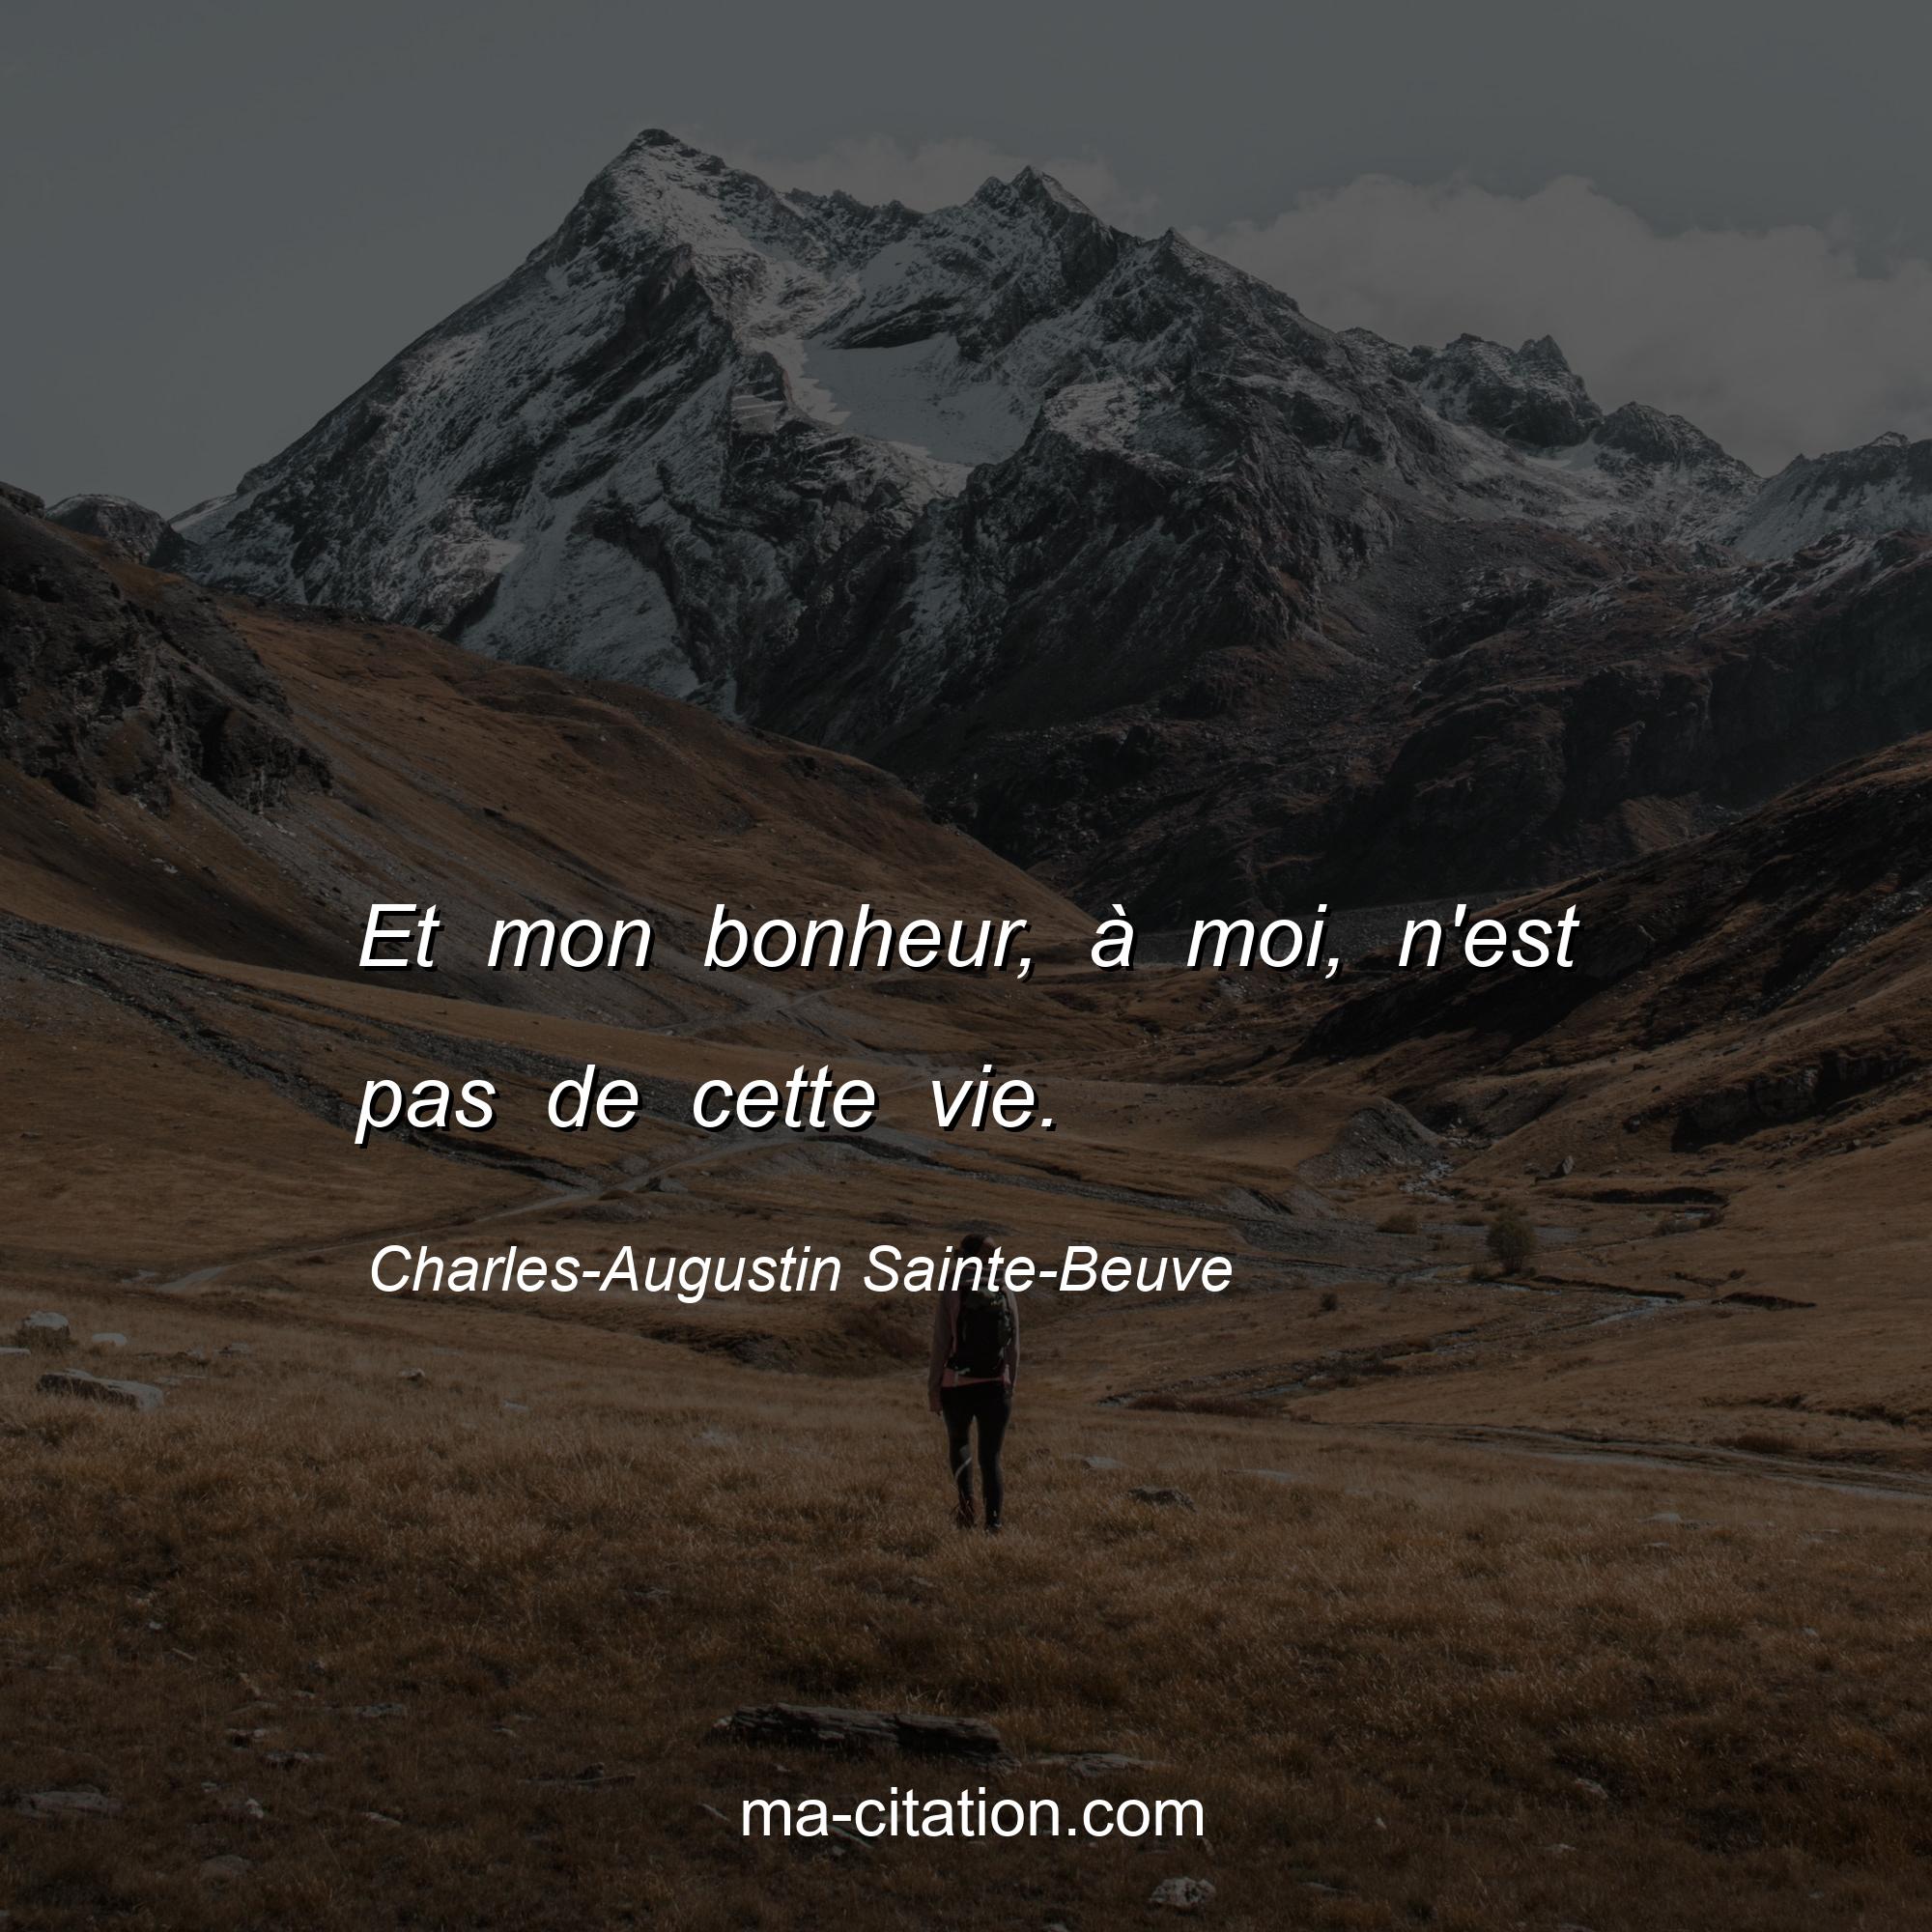 Charles-Augustin Sainte-Beuve : Et mon bonheur, à moi, n'est pas de cette vie.